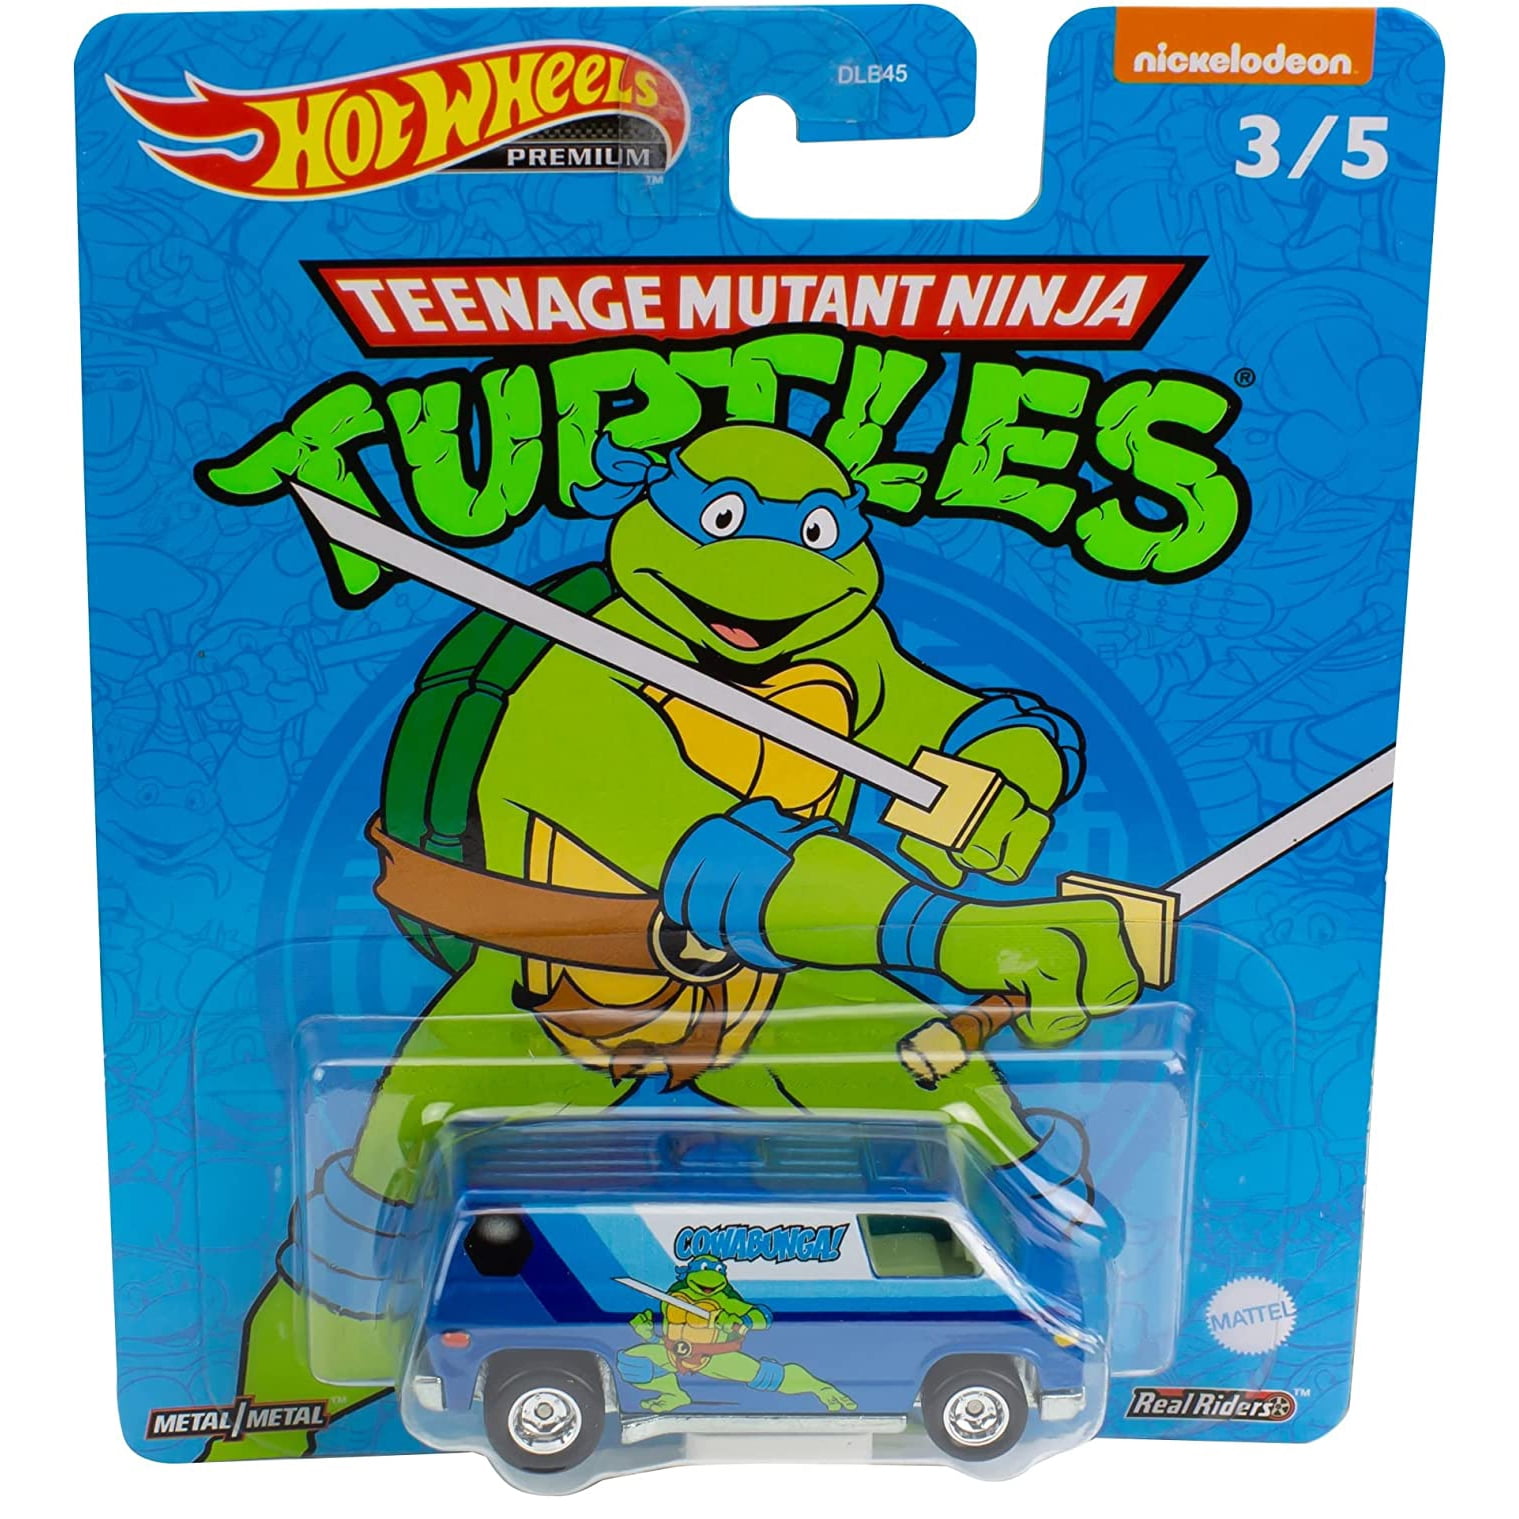 Hot Wheels Premium 70s Van Teenage Mutant Ninja Turtles Leonardo Van  Nickelodeon 3/5 